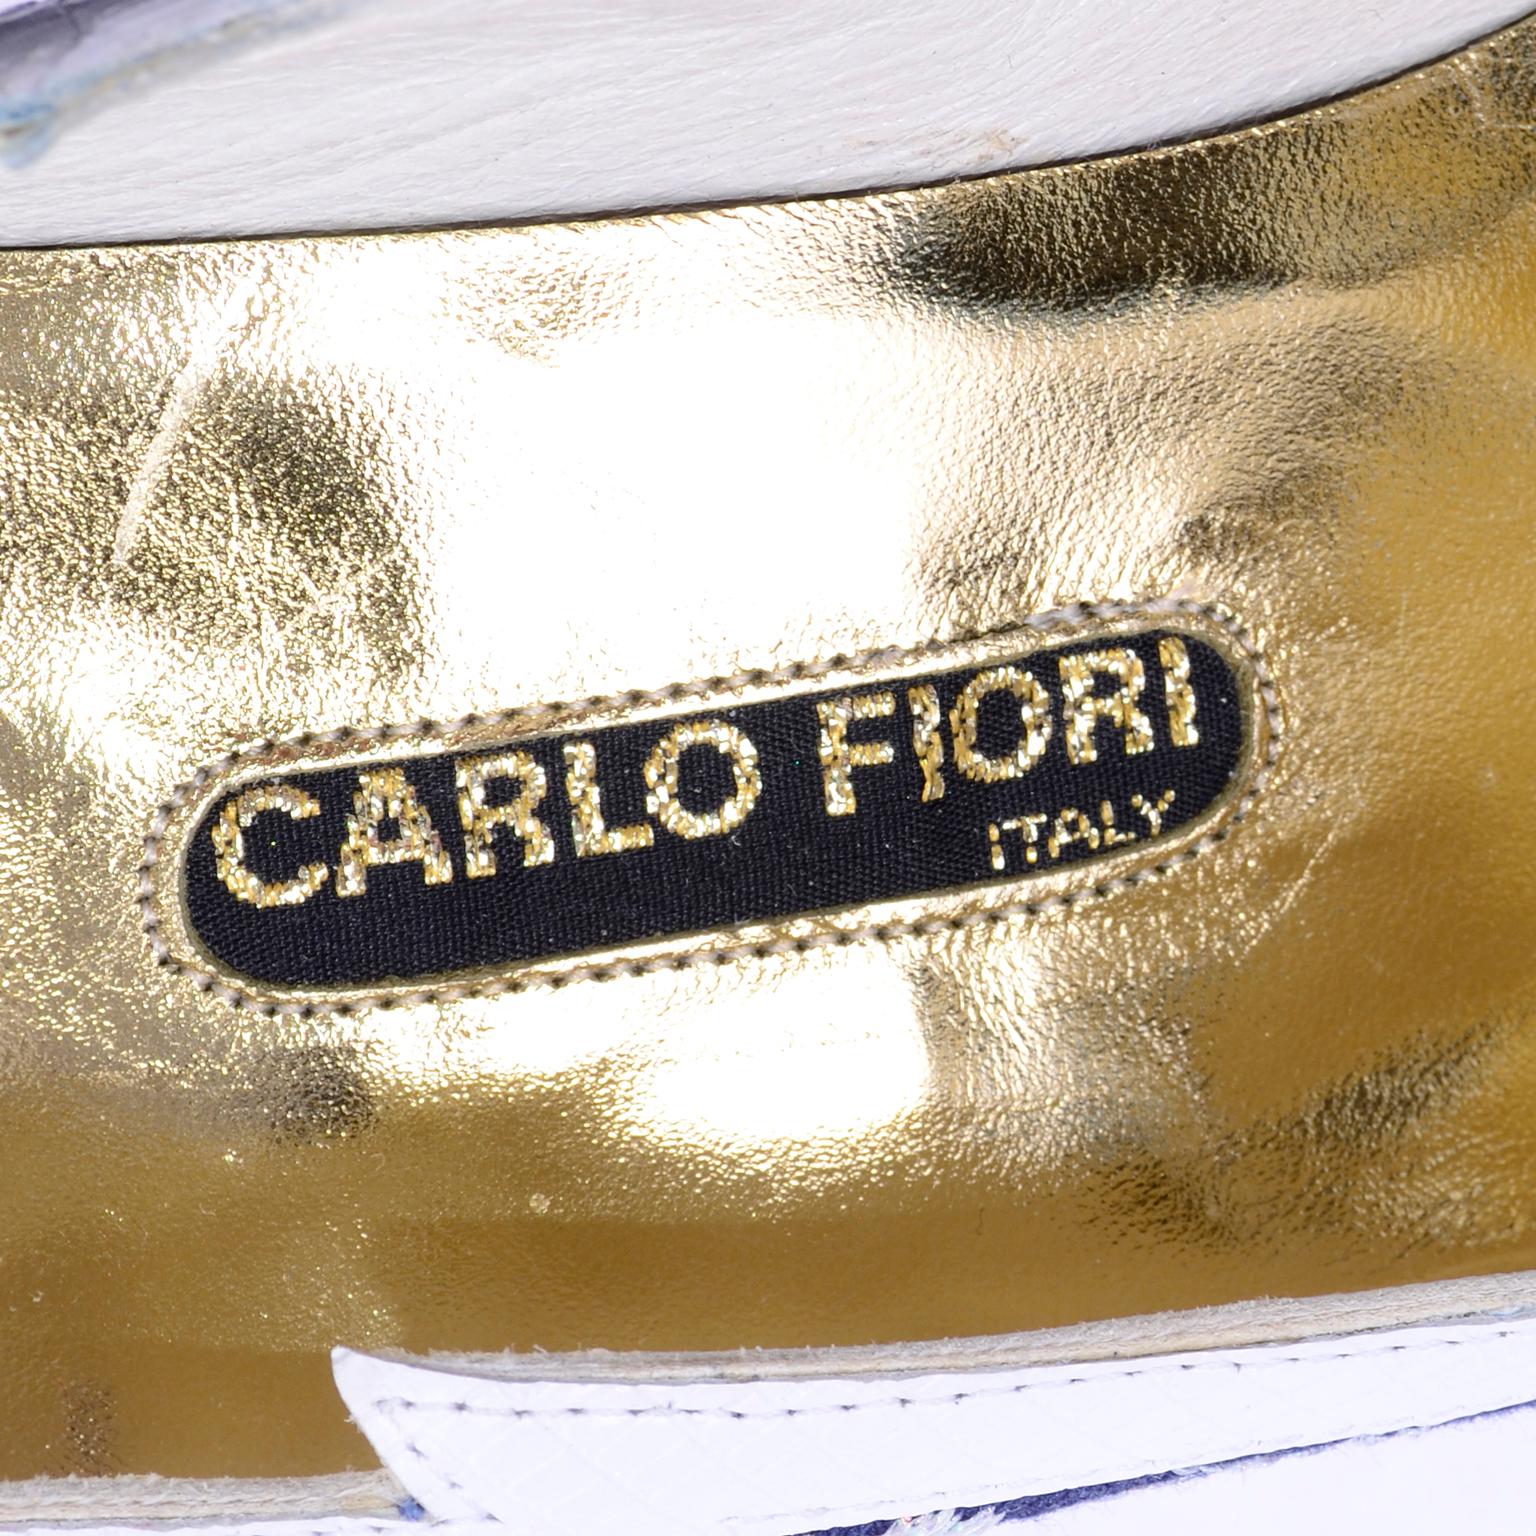 Carlo Fiori - Chaussures brodées bleu marine et blanc, en stock, non portées, taille 7B 5